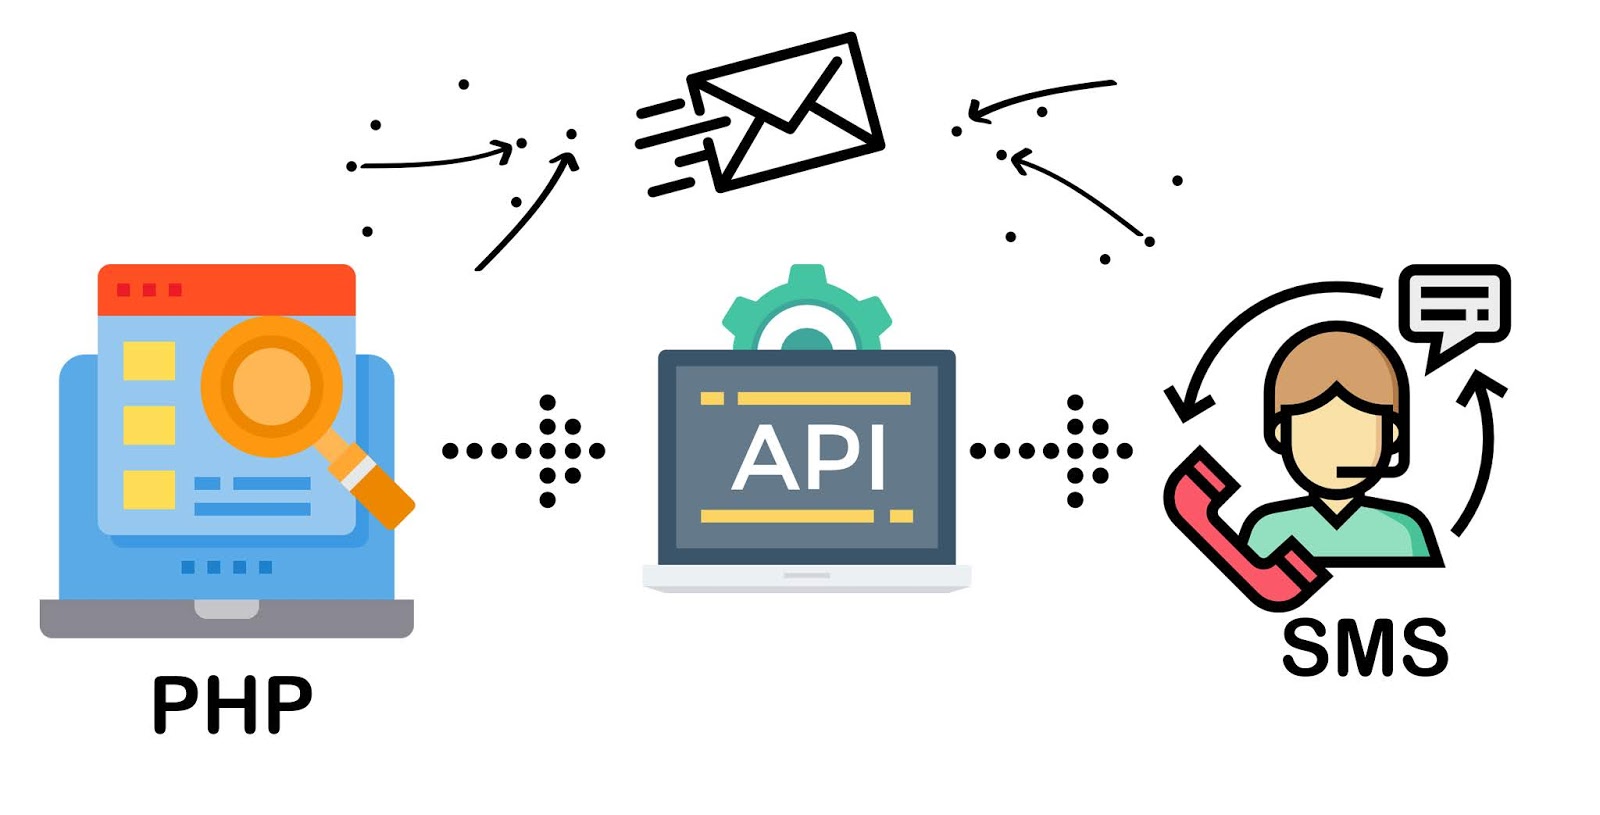 Apis sendmessage. Send SMS. SMS API. Send SMS Flutter logo.